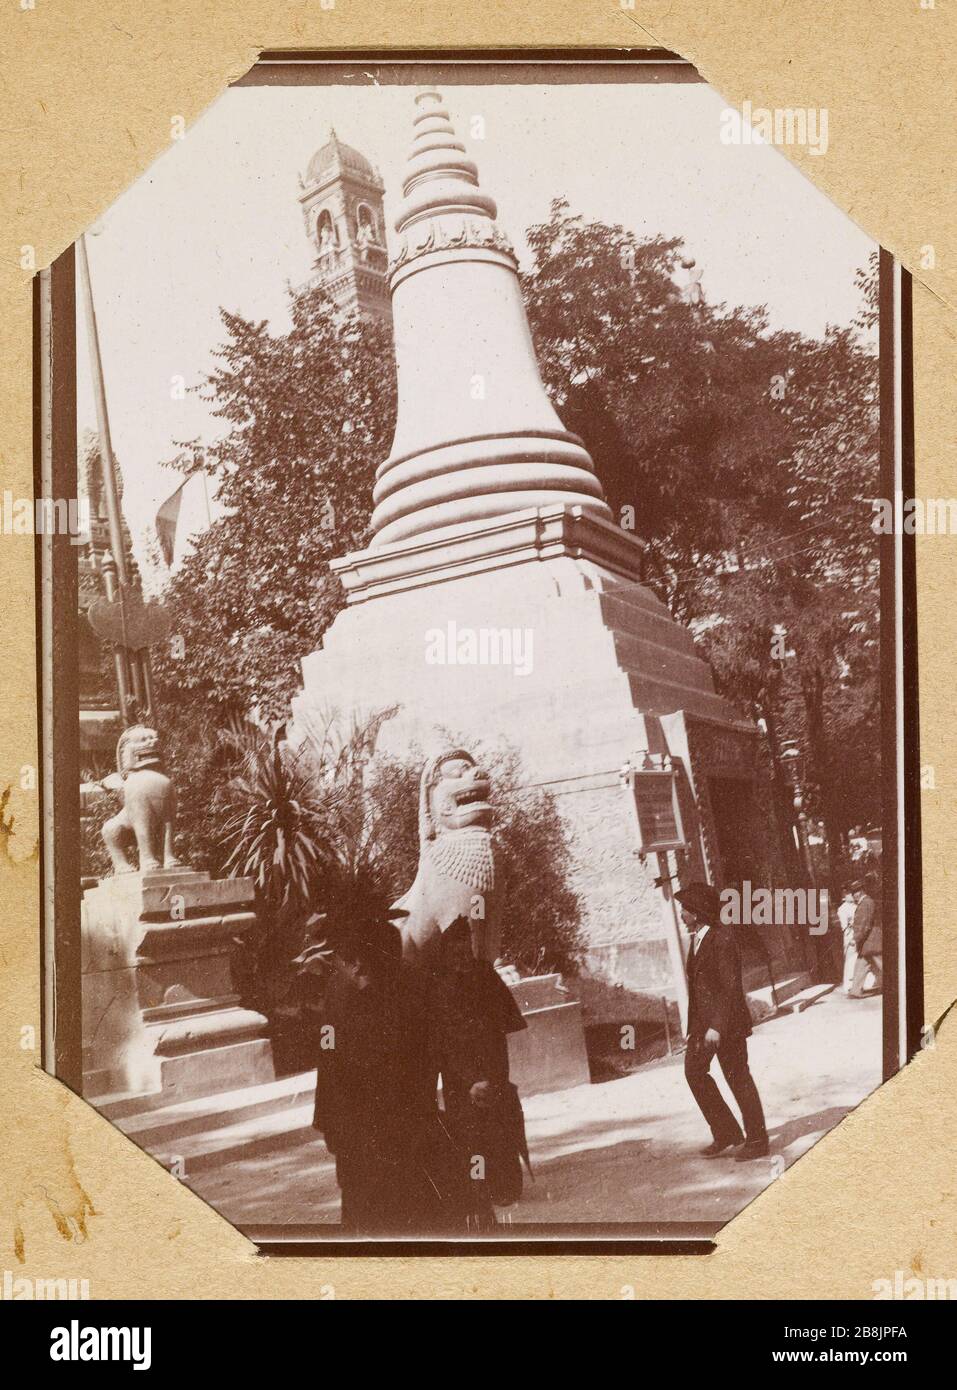 Album of the 1900 World exhibition Pnom - Cambodia Anonyme. Album de l'exposition universelle de 1900. Le Pnom - Cambodge. 1900. Musée des Beaux-Arts de la Ville de Paris, Petit Palais. Stock Photo